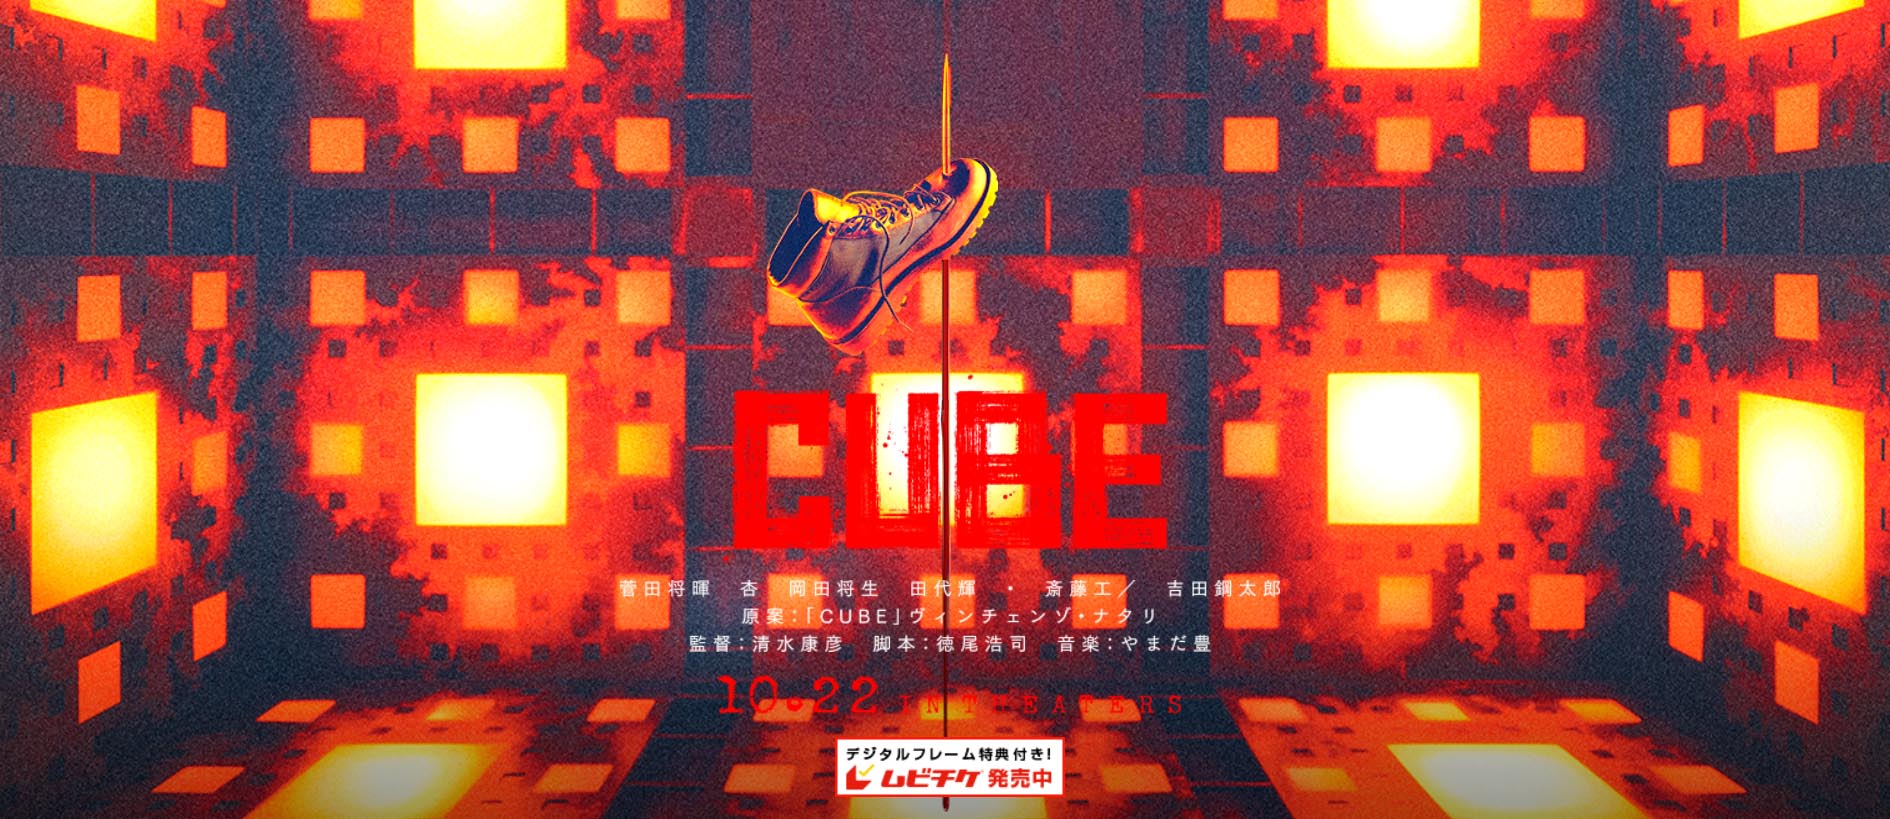 Preparado el remake japonés de ‘Cube’